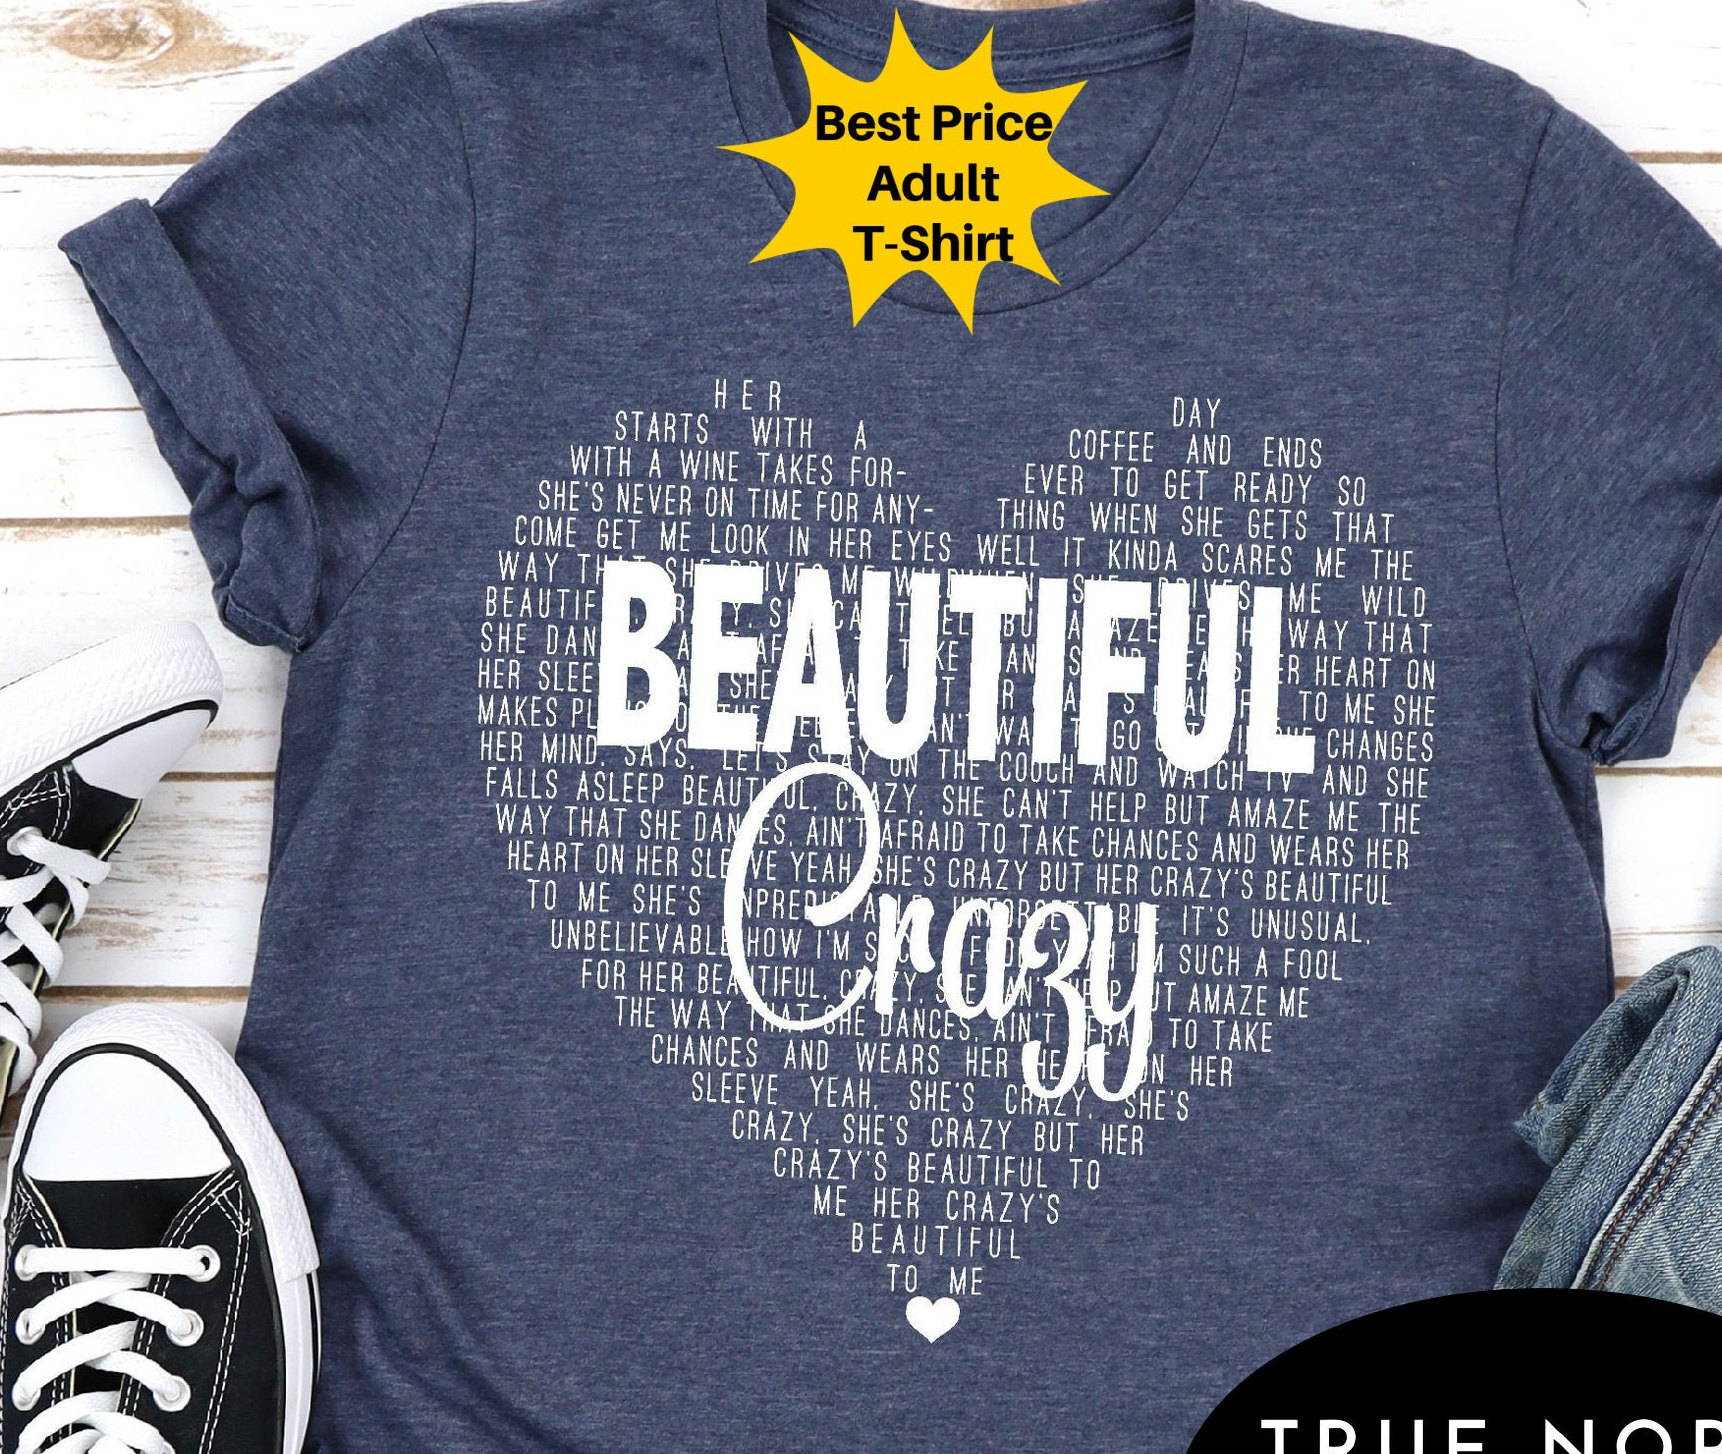 Beautiful Crazy Shirt Beautiful Crazy Lyrics Shirt Country 